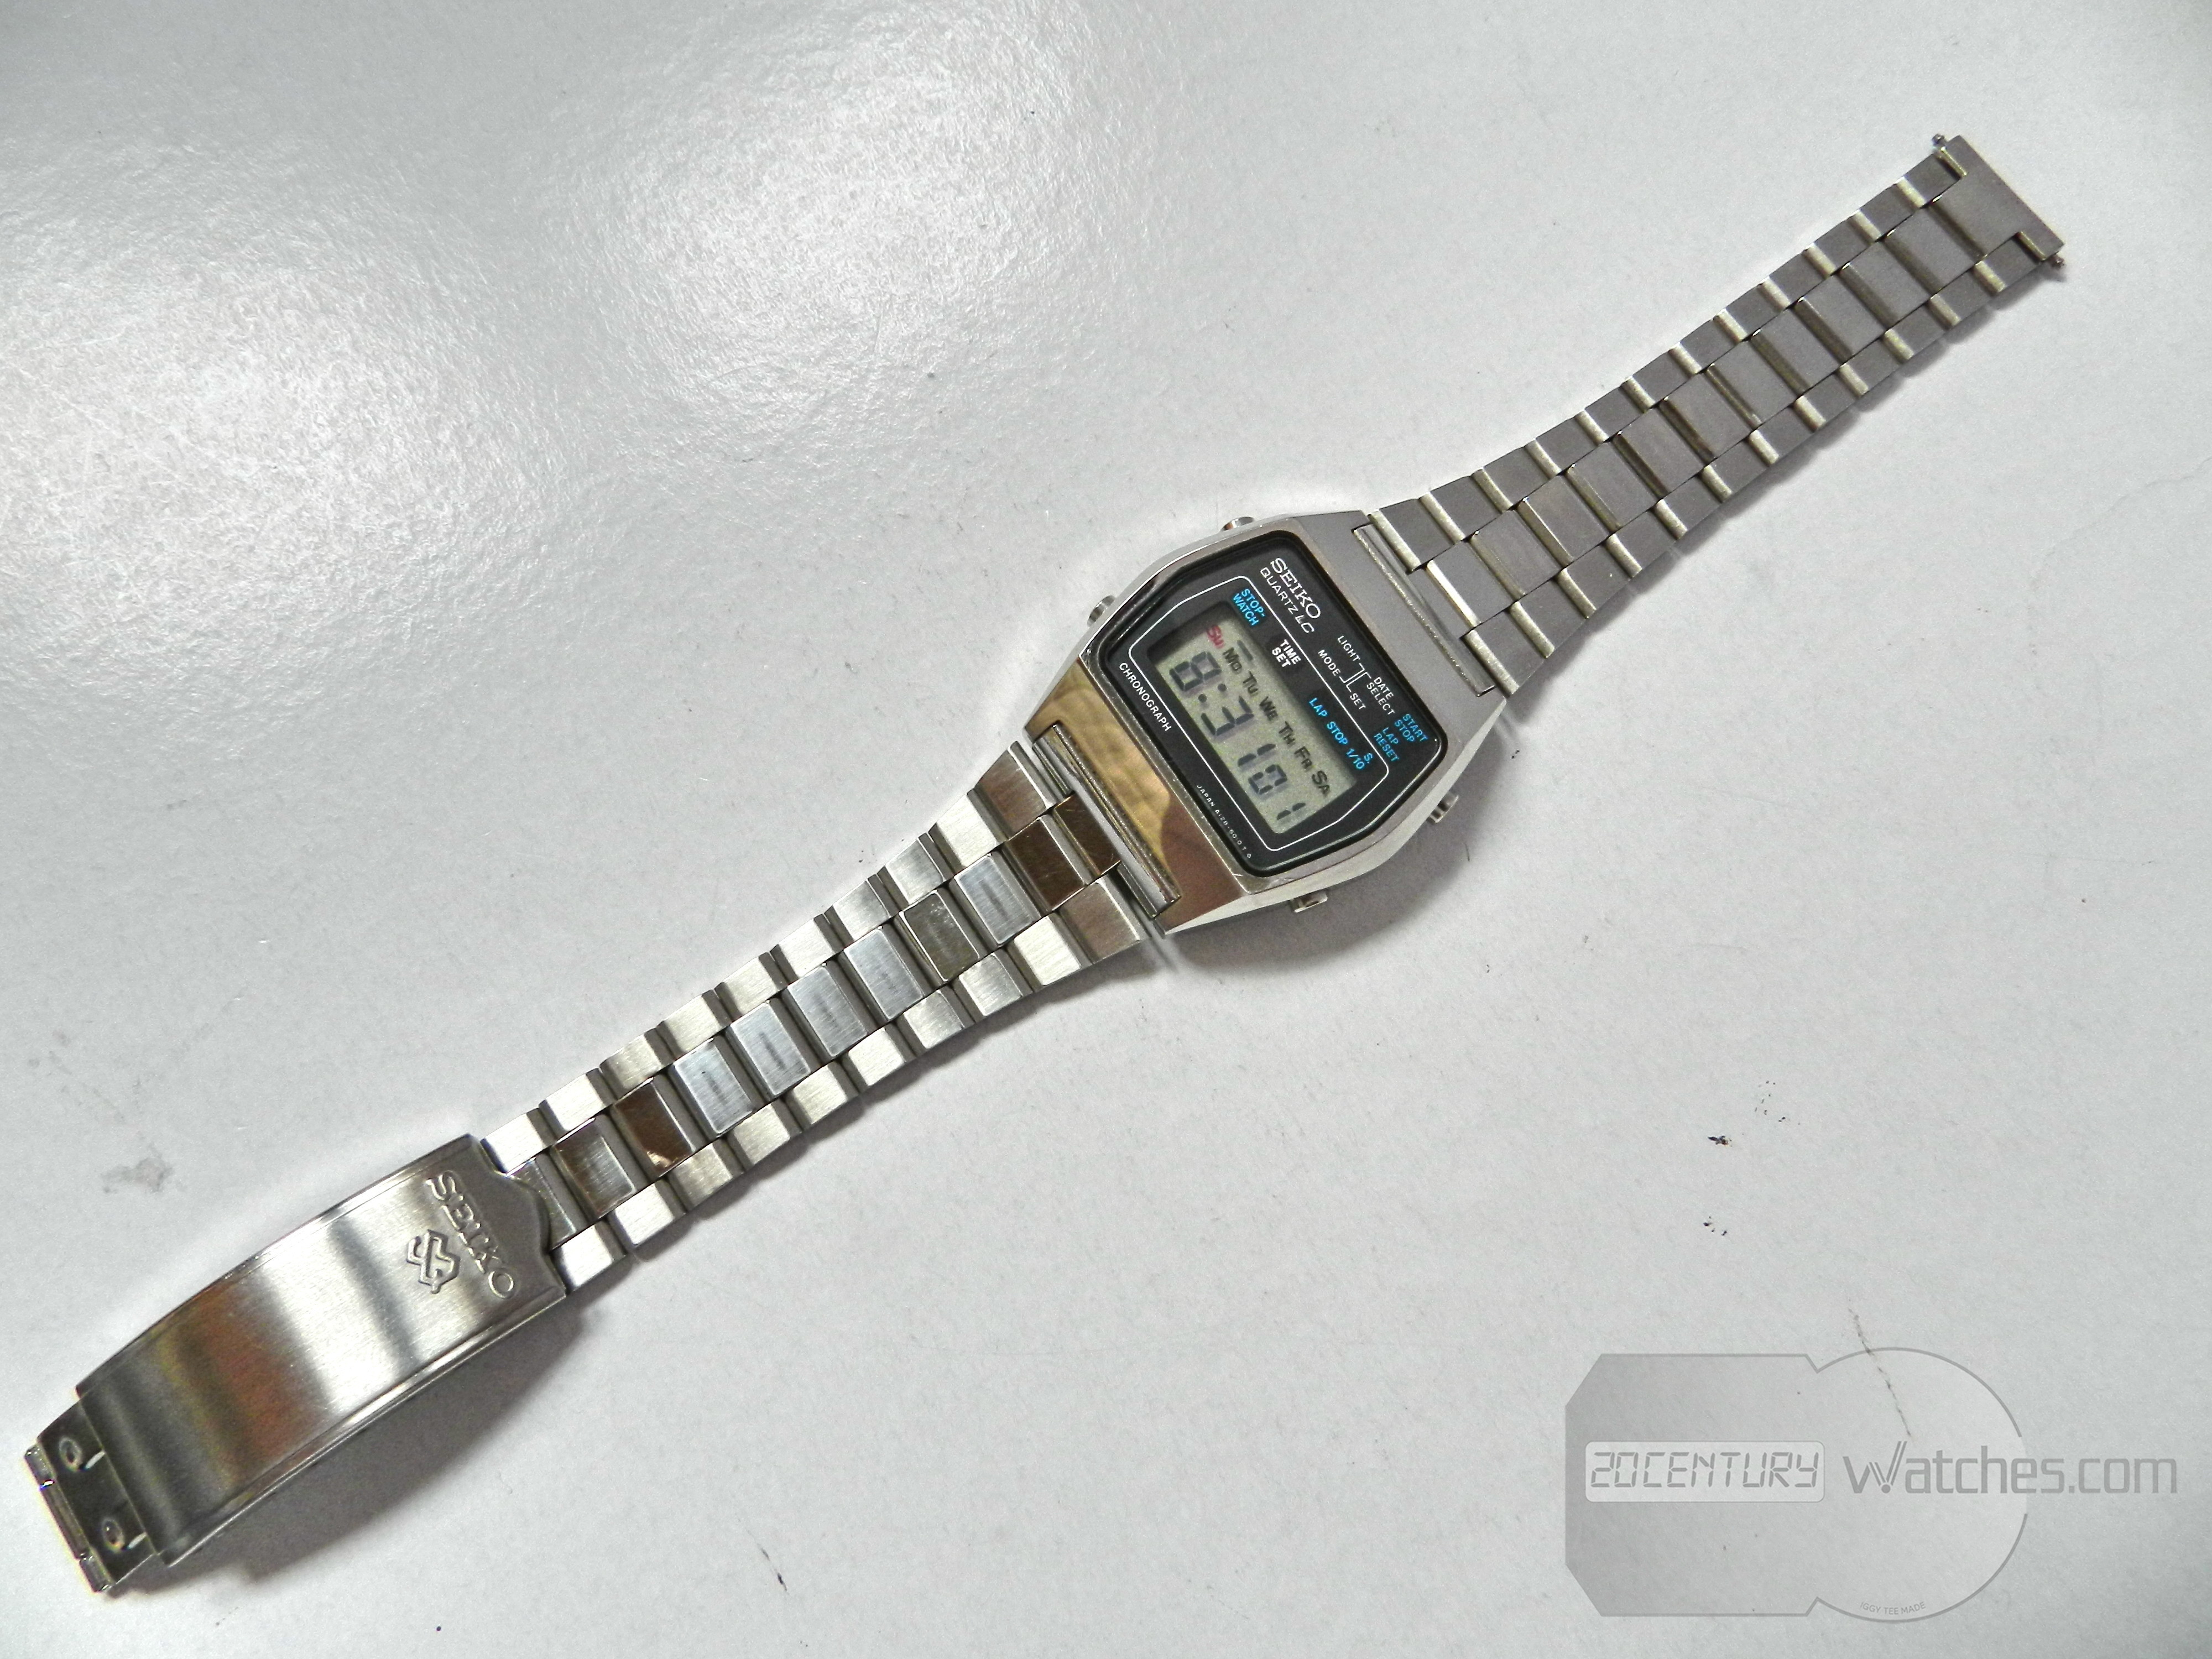 Seiko A128-5010 – 20th Century Watches